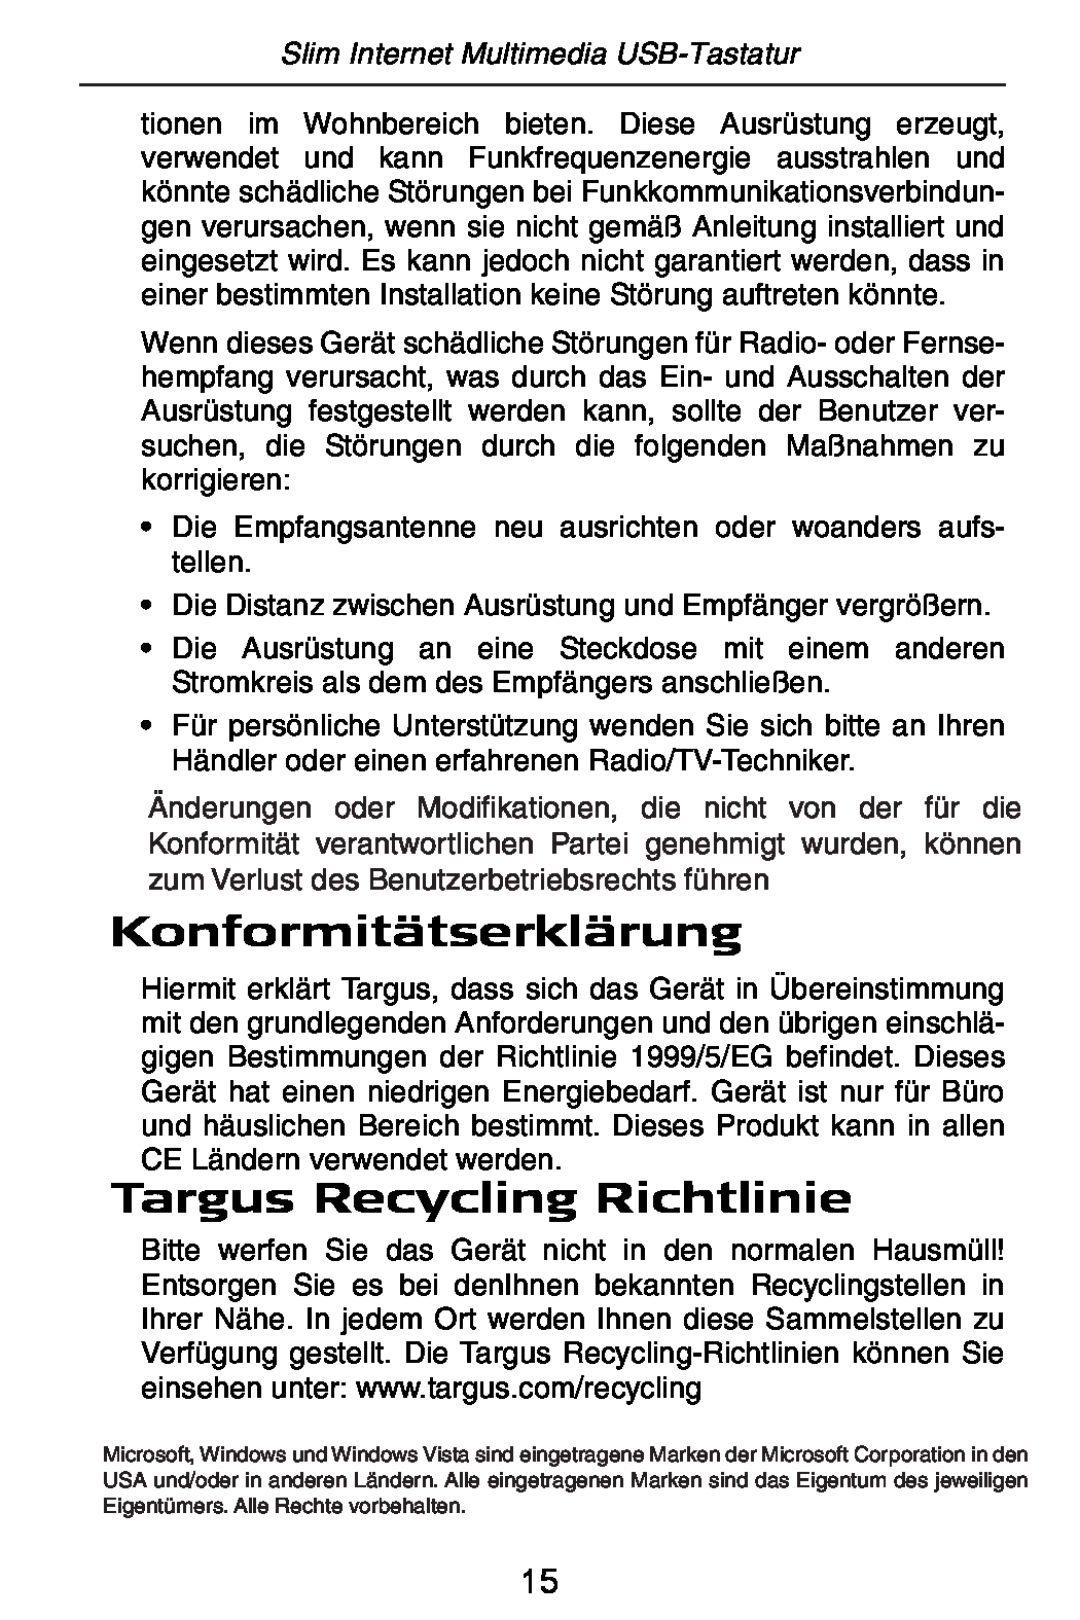 Targus slim internet multimedia USB keyboard specifications Konformitätserklärung, Targus Recycling Richtlinie 